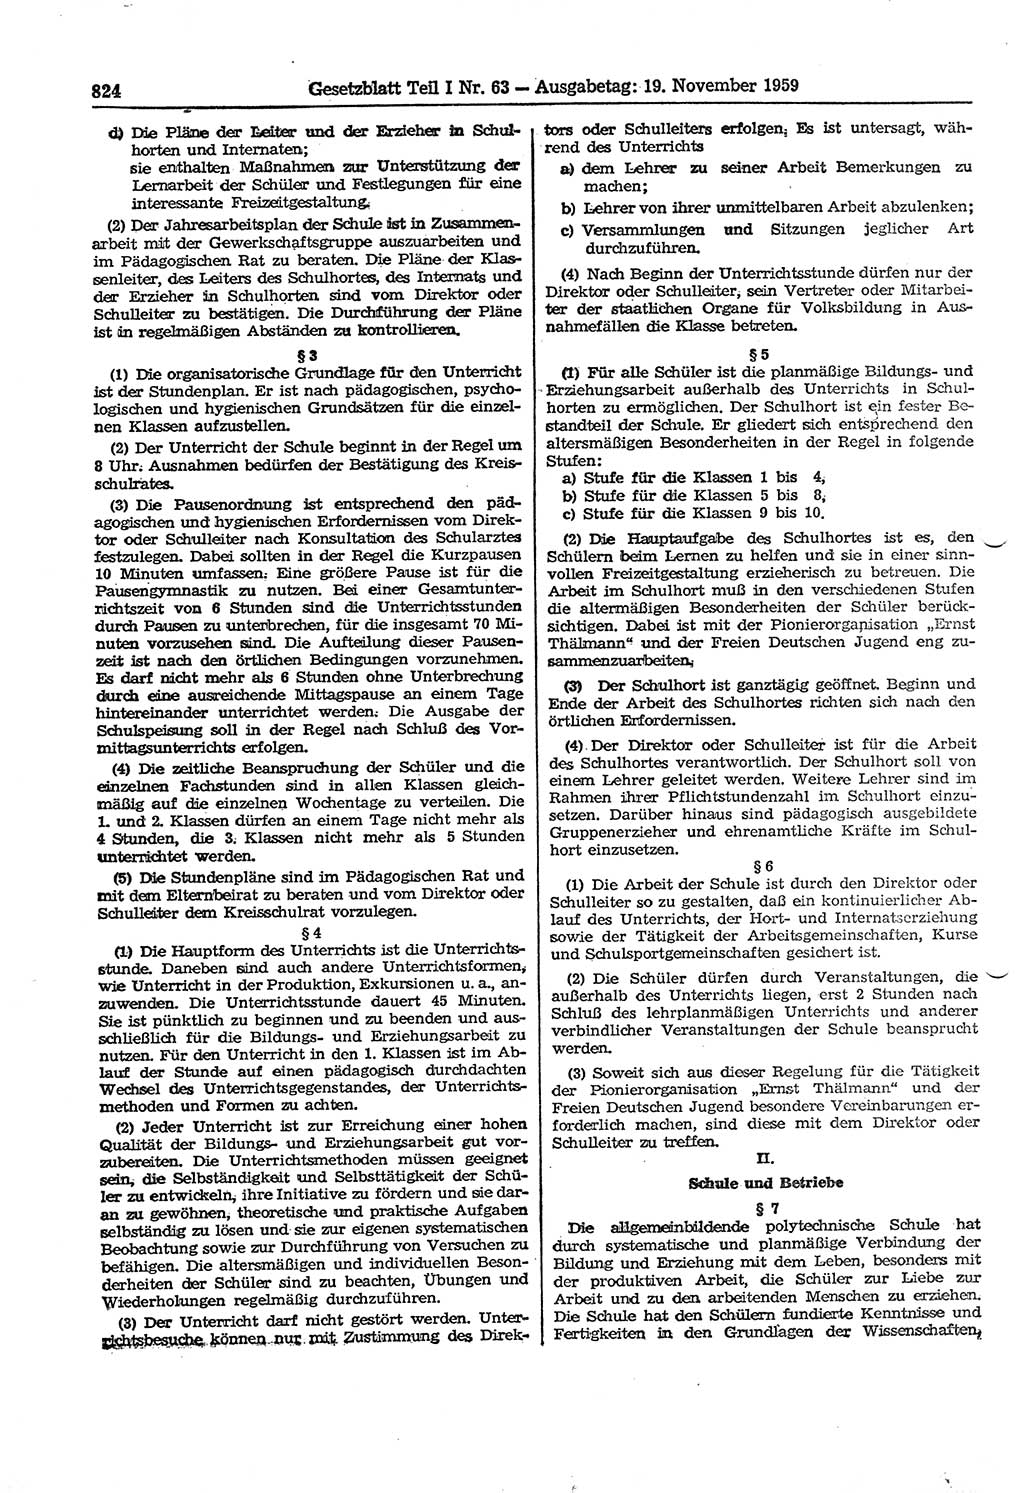 Gesetzblatt (GBl.) der Deutschen Demokratischen Republik (DDR) Teil Ⅰ 1959, Seite 824 (GBl. DDR Ⅰ 1959, S. 824)